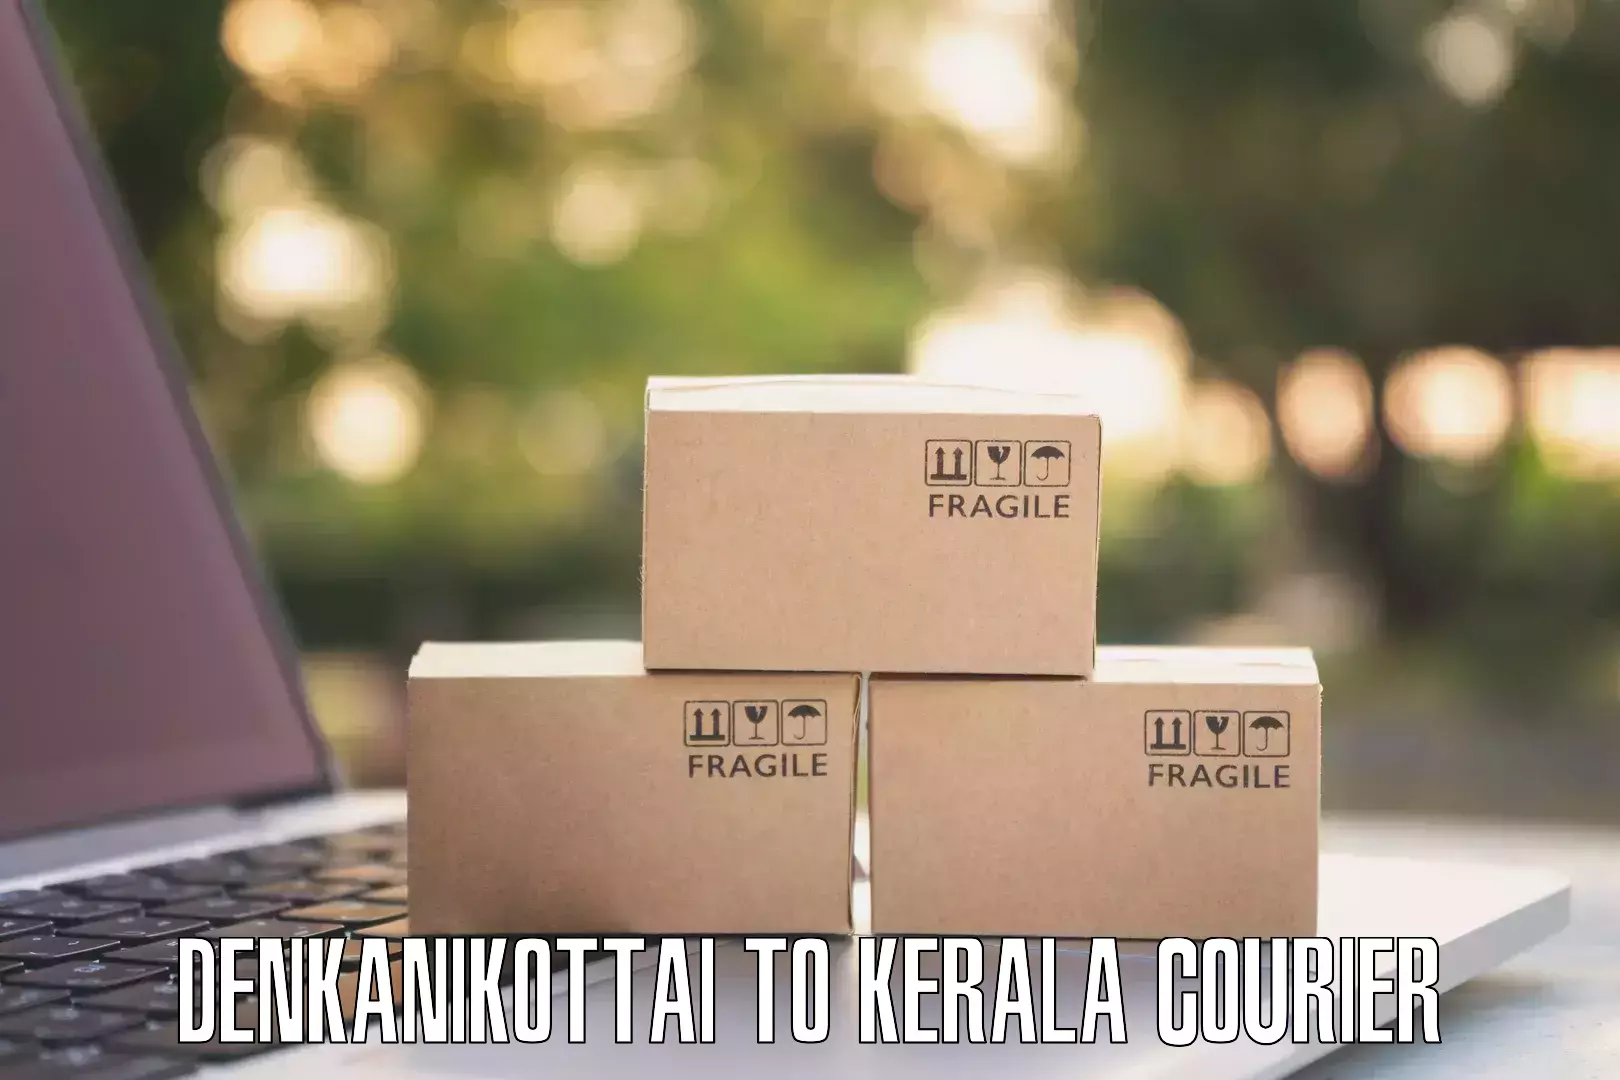 Business courier solutions Denkanikottai to Thrissur